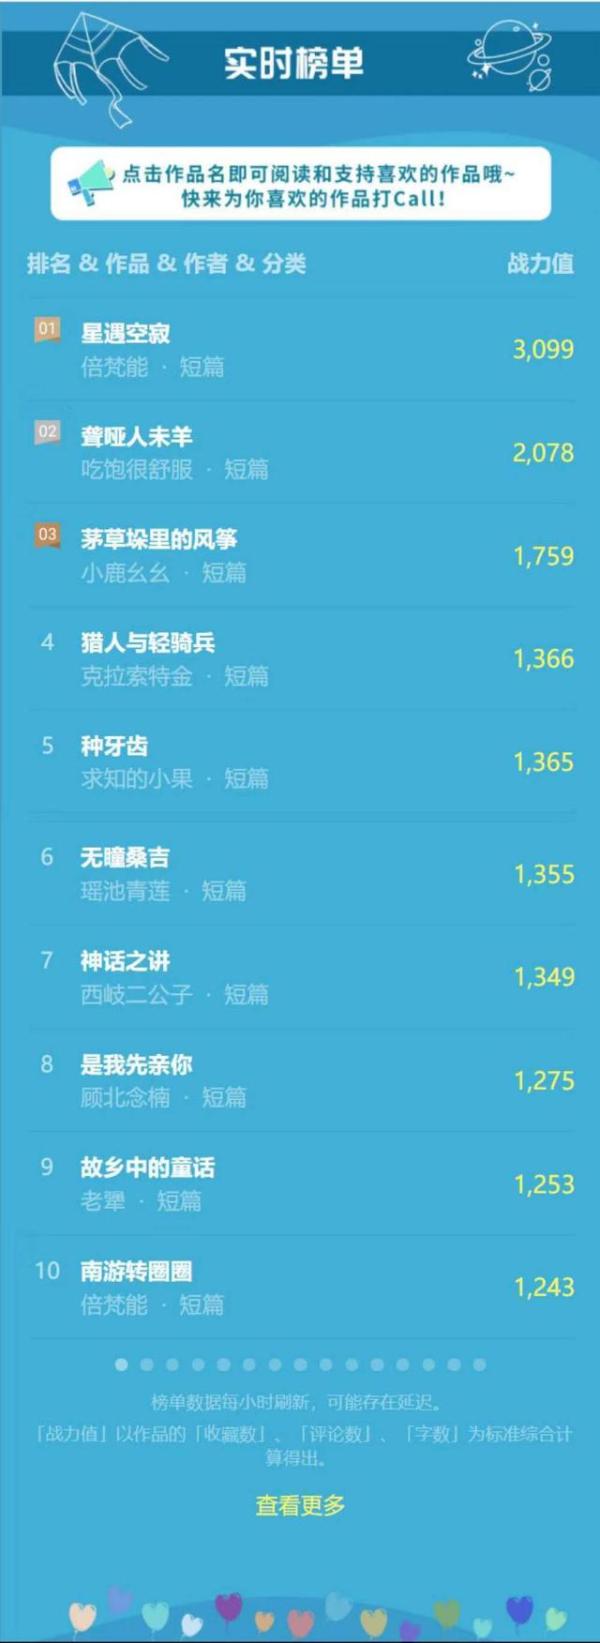 首届中国儿童文学征文大赛榜单上线 TOP150作品动态刷新